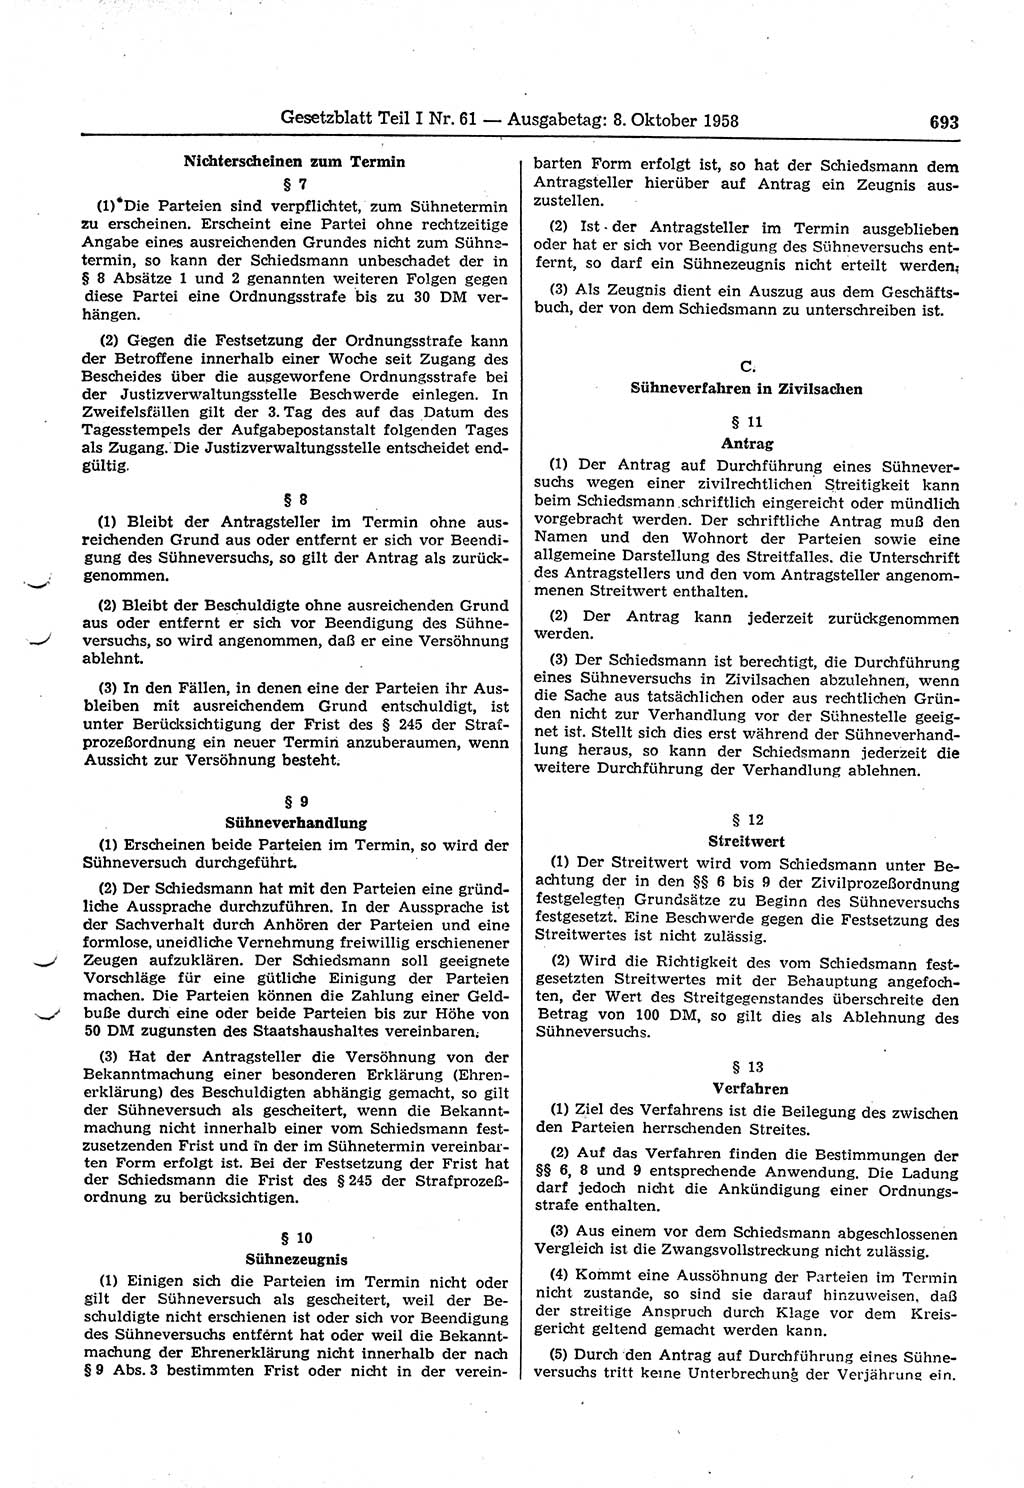 Gesetzblatt (GBl.) der Deutschen Demokratischen Republik (DDR) Teil Ⅰ 1958, Seite 693 (GBl. DDR Ⅰ 1958, S. 693)